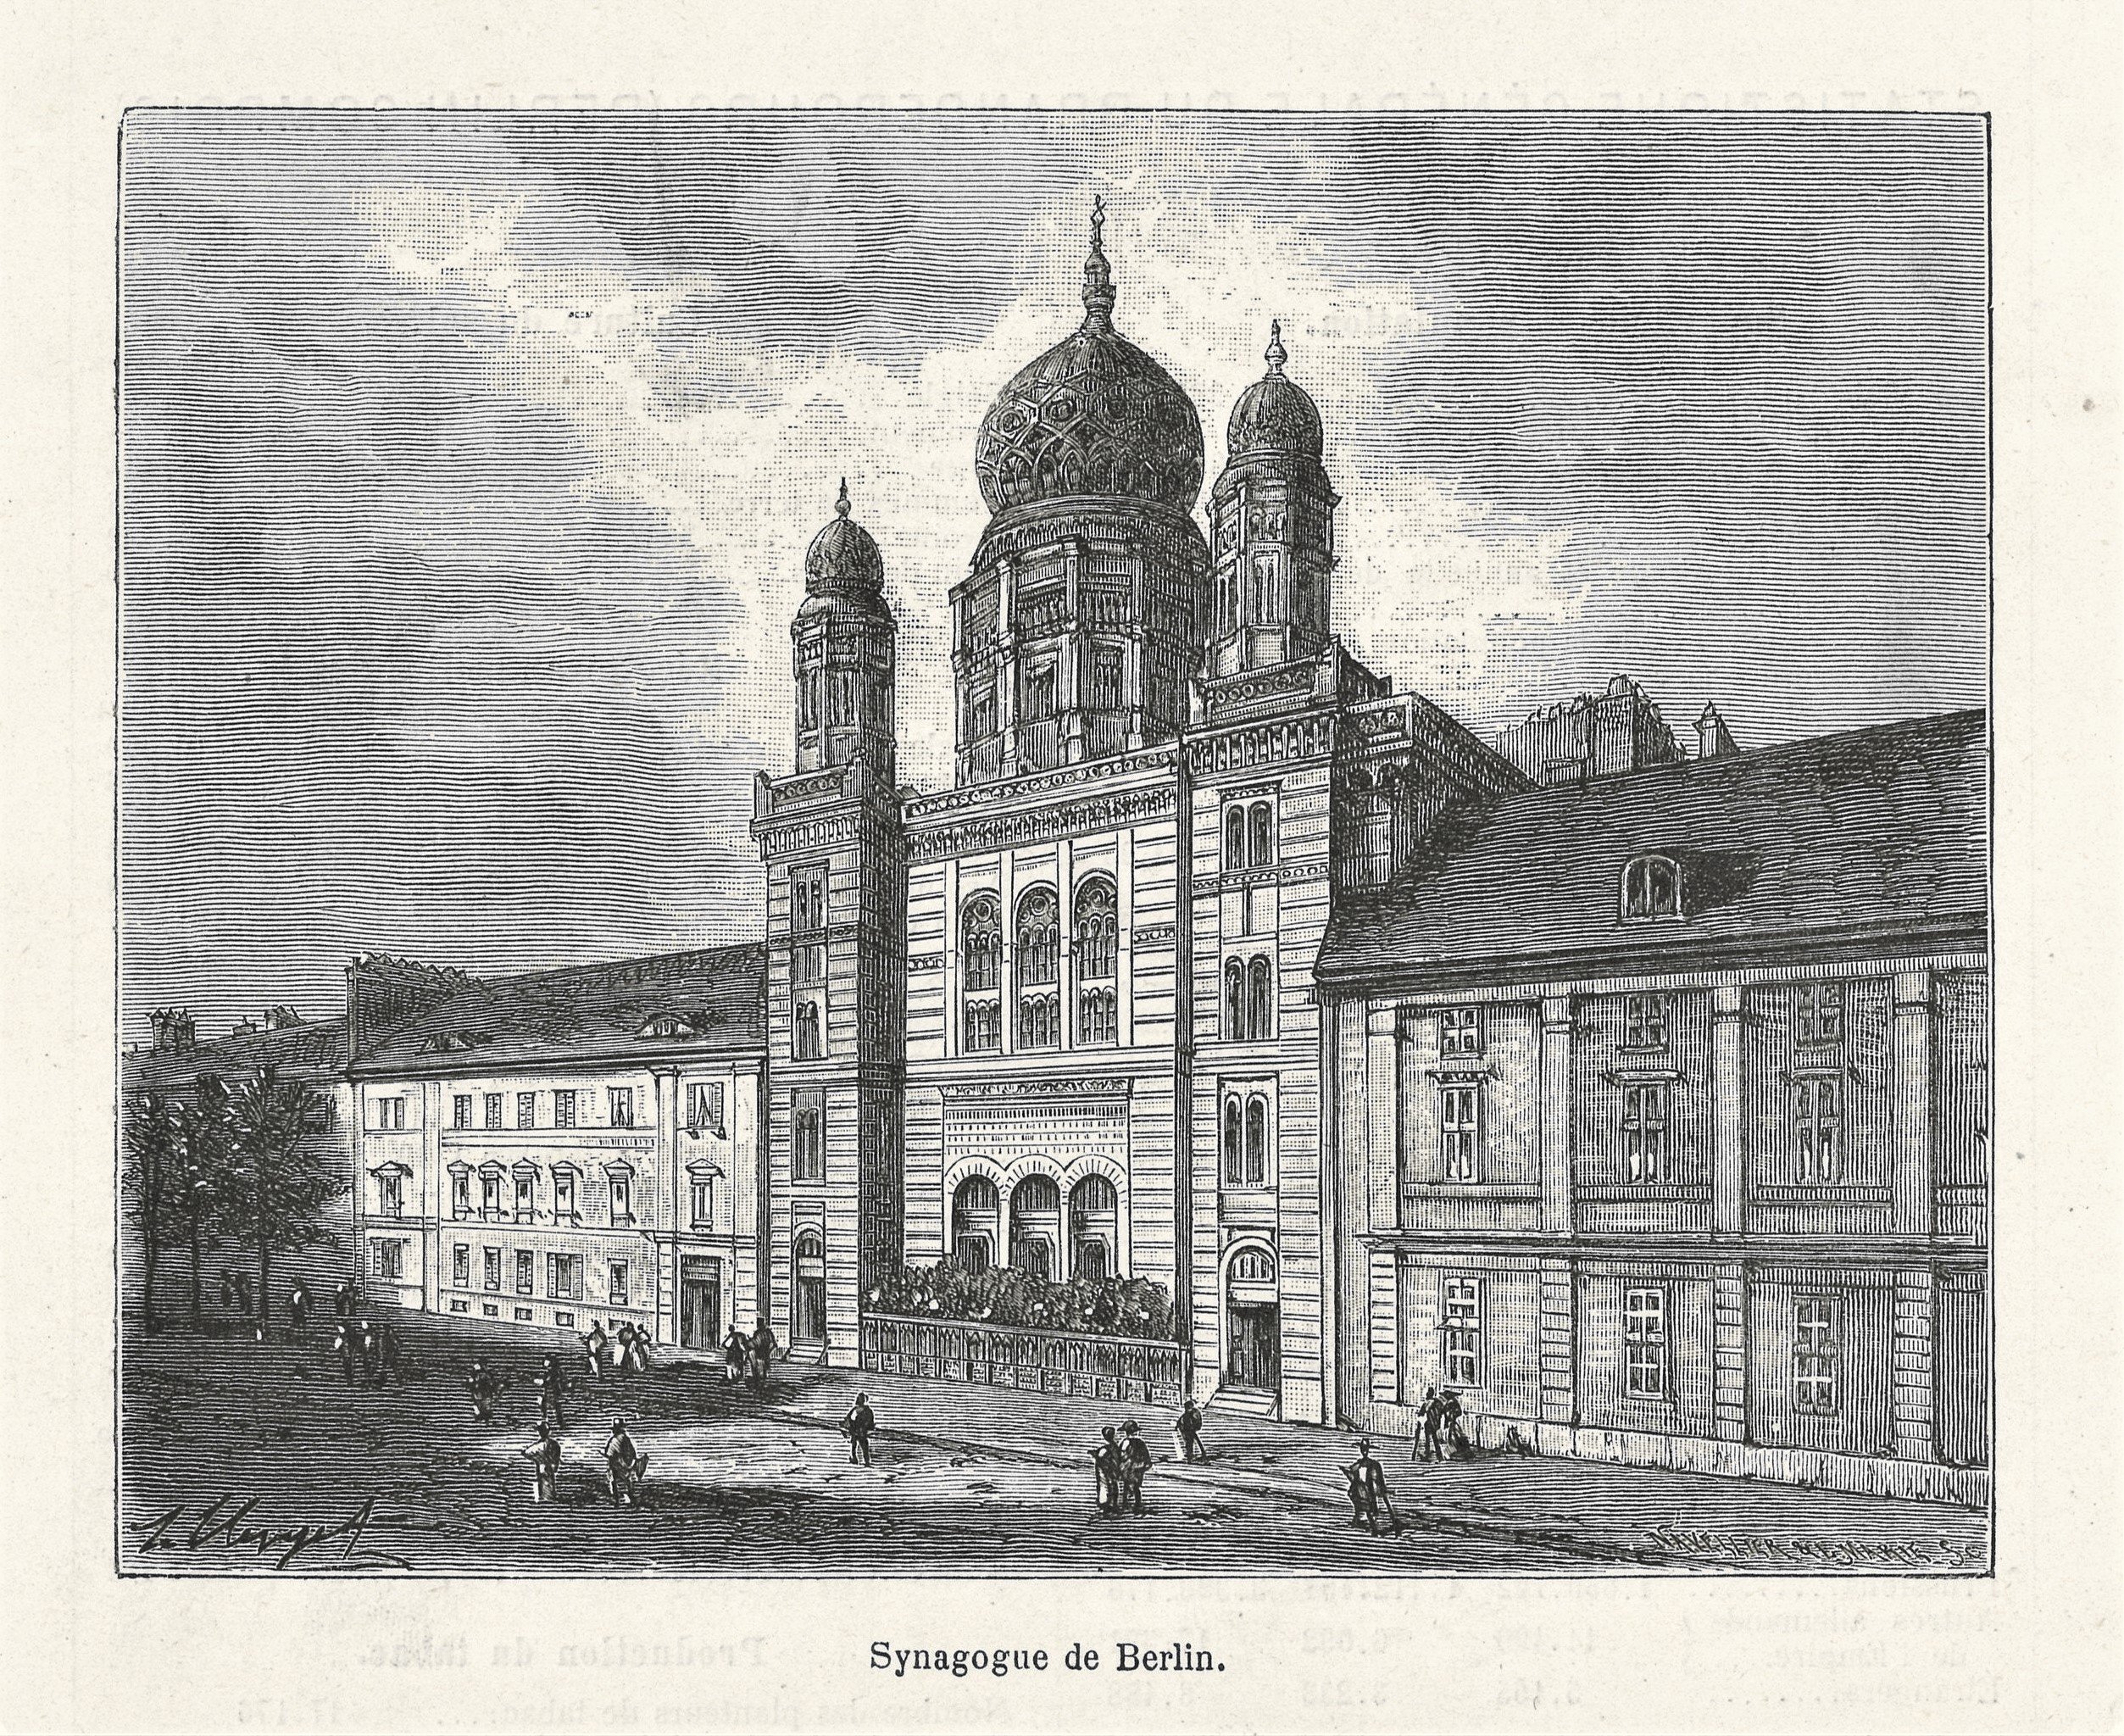 Berlin-Mitte: Neue Synagoge in der Oranienburger Straße 30 von Südosten (Landesgeschichtliche Vereinigung für die Mark Brandenburg e.V., Archiv CC BY)